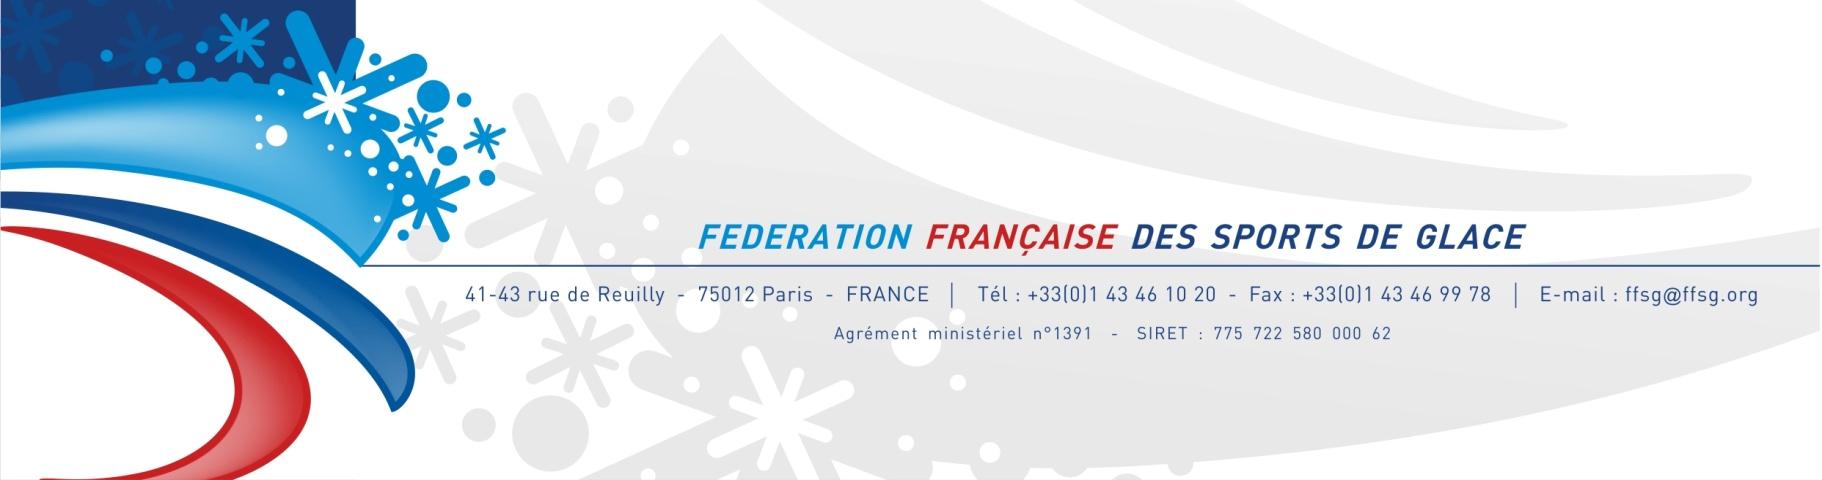 Le patinage de vitesse en France Projet sportif 2014-2018 et au-delà 2022 2026